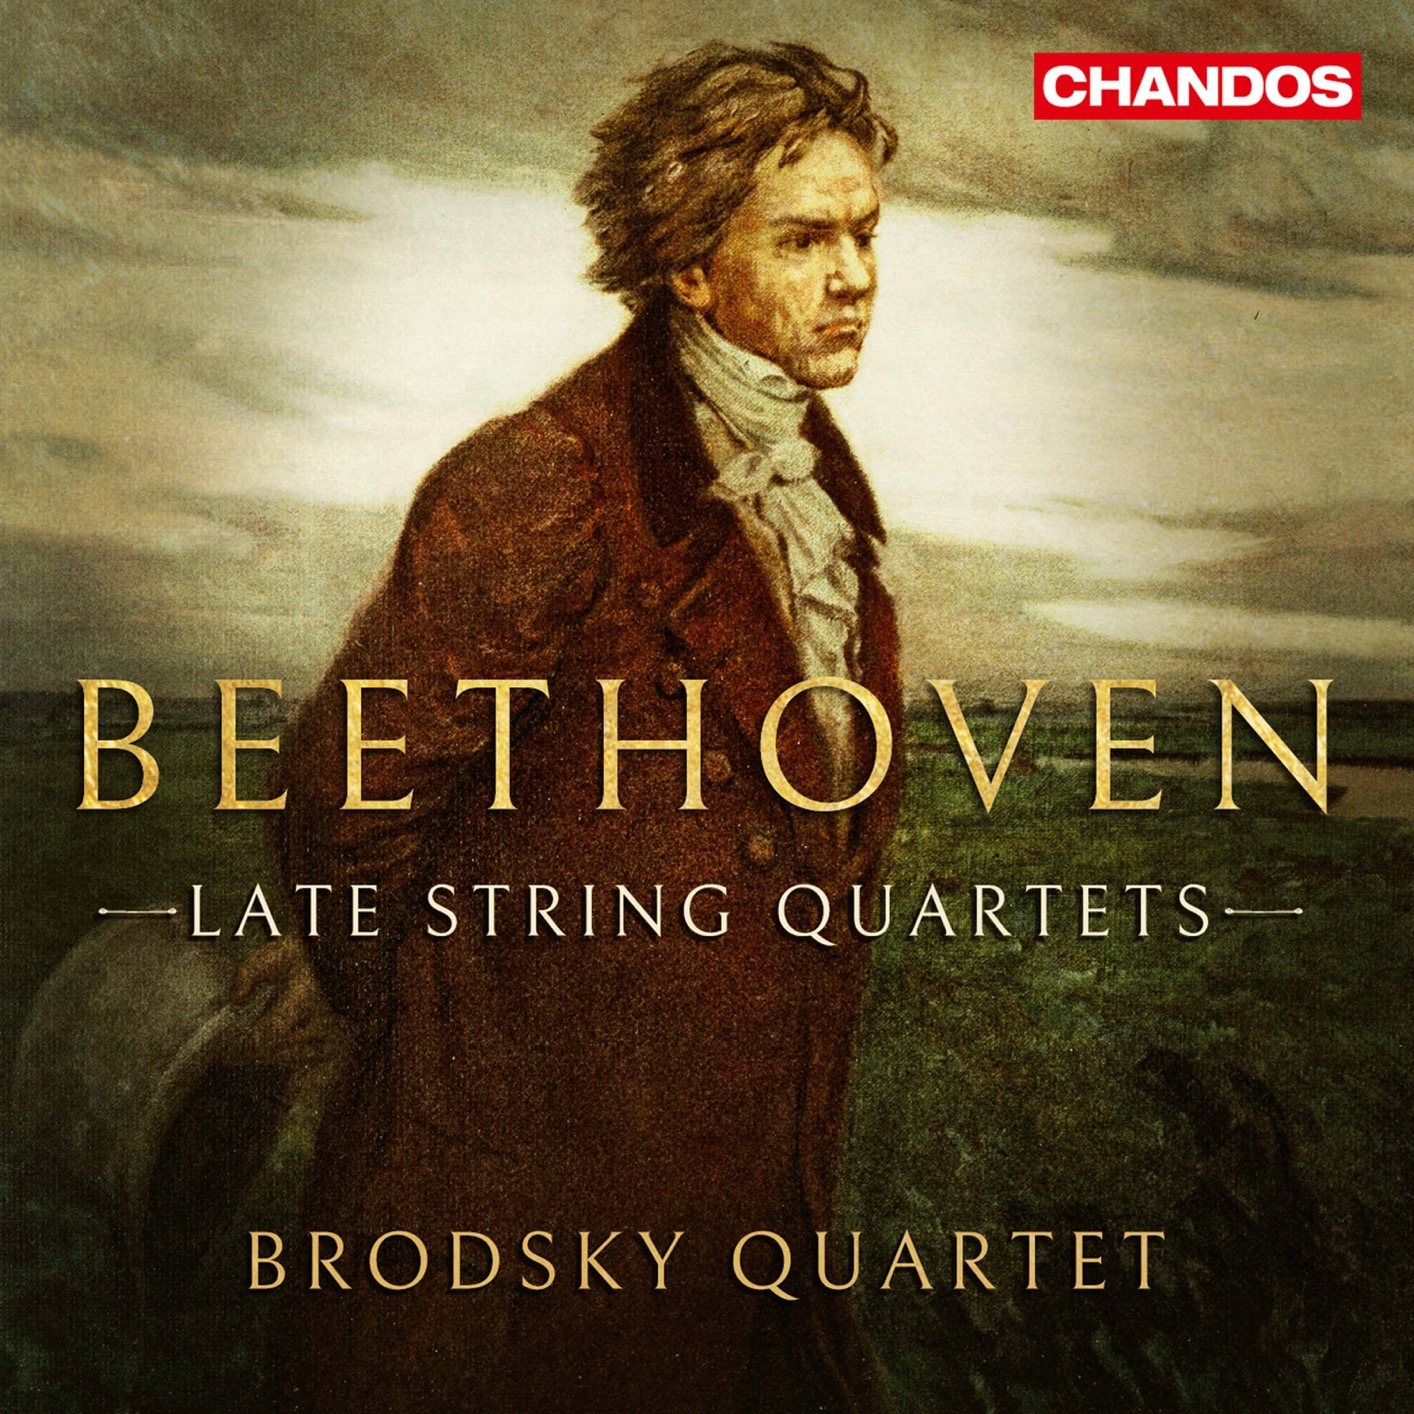 Brodsky Quartet - Beethoven: Late String Quartets (2020) [FLAC 24bit/96kHz]